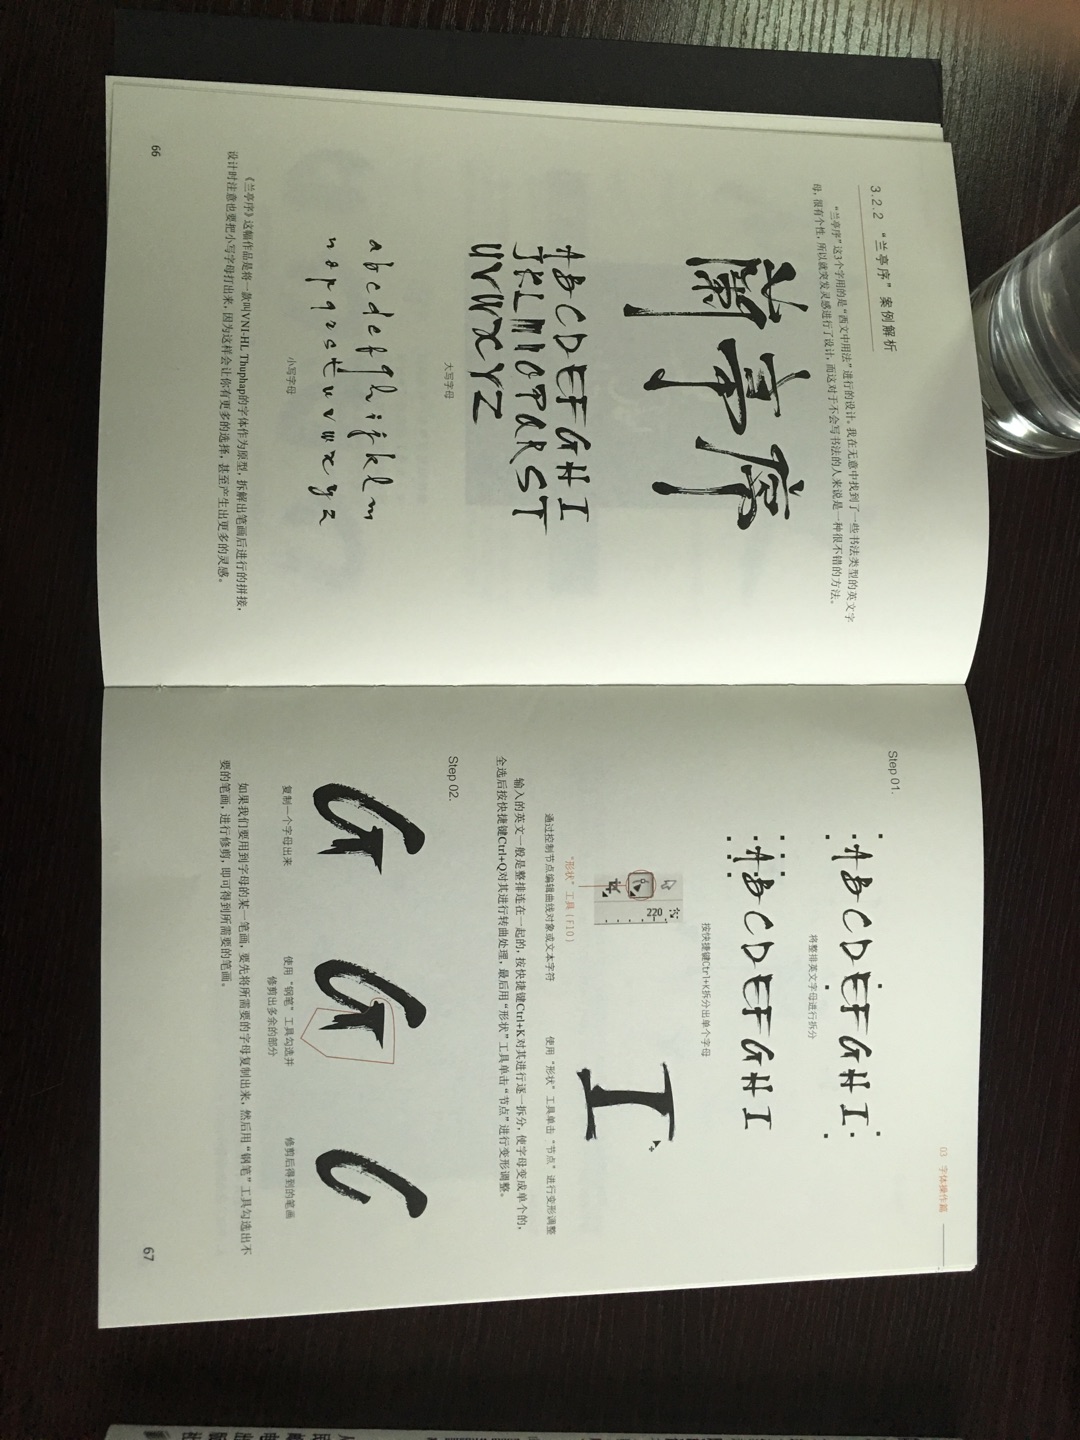 这本书真的很好，中国文字属于象形文字，一字一场景，一词一故事，而jansoon就是一个善于用字体讲故事的人，我刚接触字体设计，能力还只是皮毛，困惑时正好朋友推荐了这本书，本书绝对是学习字体设计的指明灯  受益匪浅   希望自己学到的更多  加油